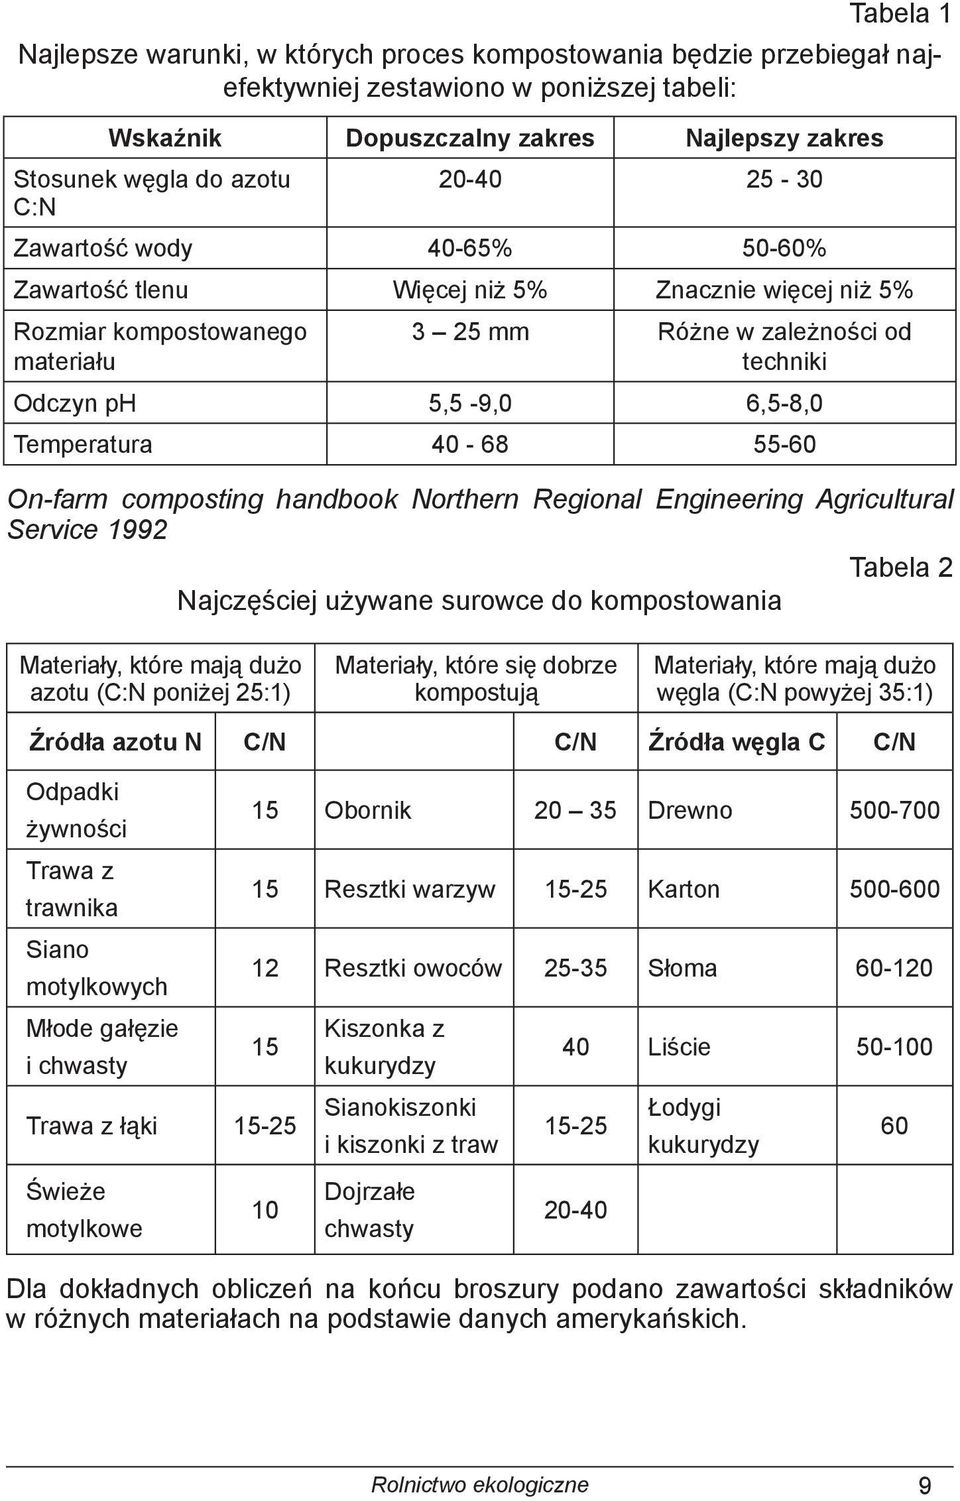 Temperatura 40-68 55-60 On-farm composting handbook Northern Regional Engineering Agricultural Service 1992 Tabela 2 Najczęściej używane surowce do kompostowania Materiały, które mają dużo azotu (C:N